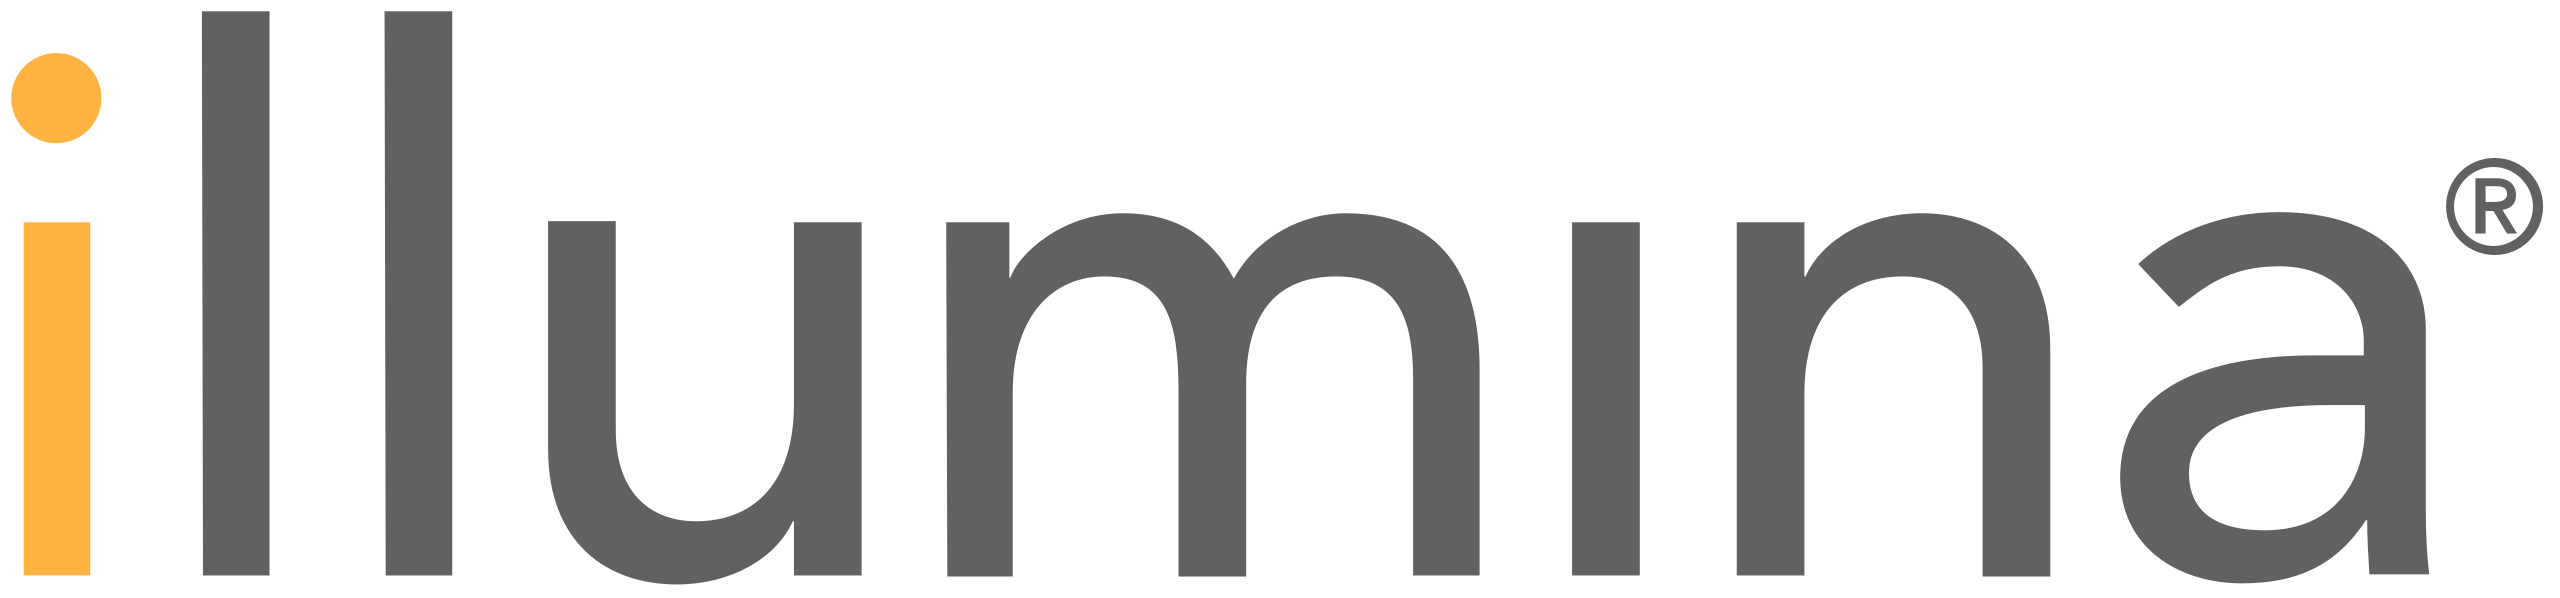 Illumina Logo - copyright Illumina